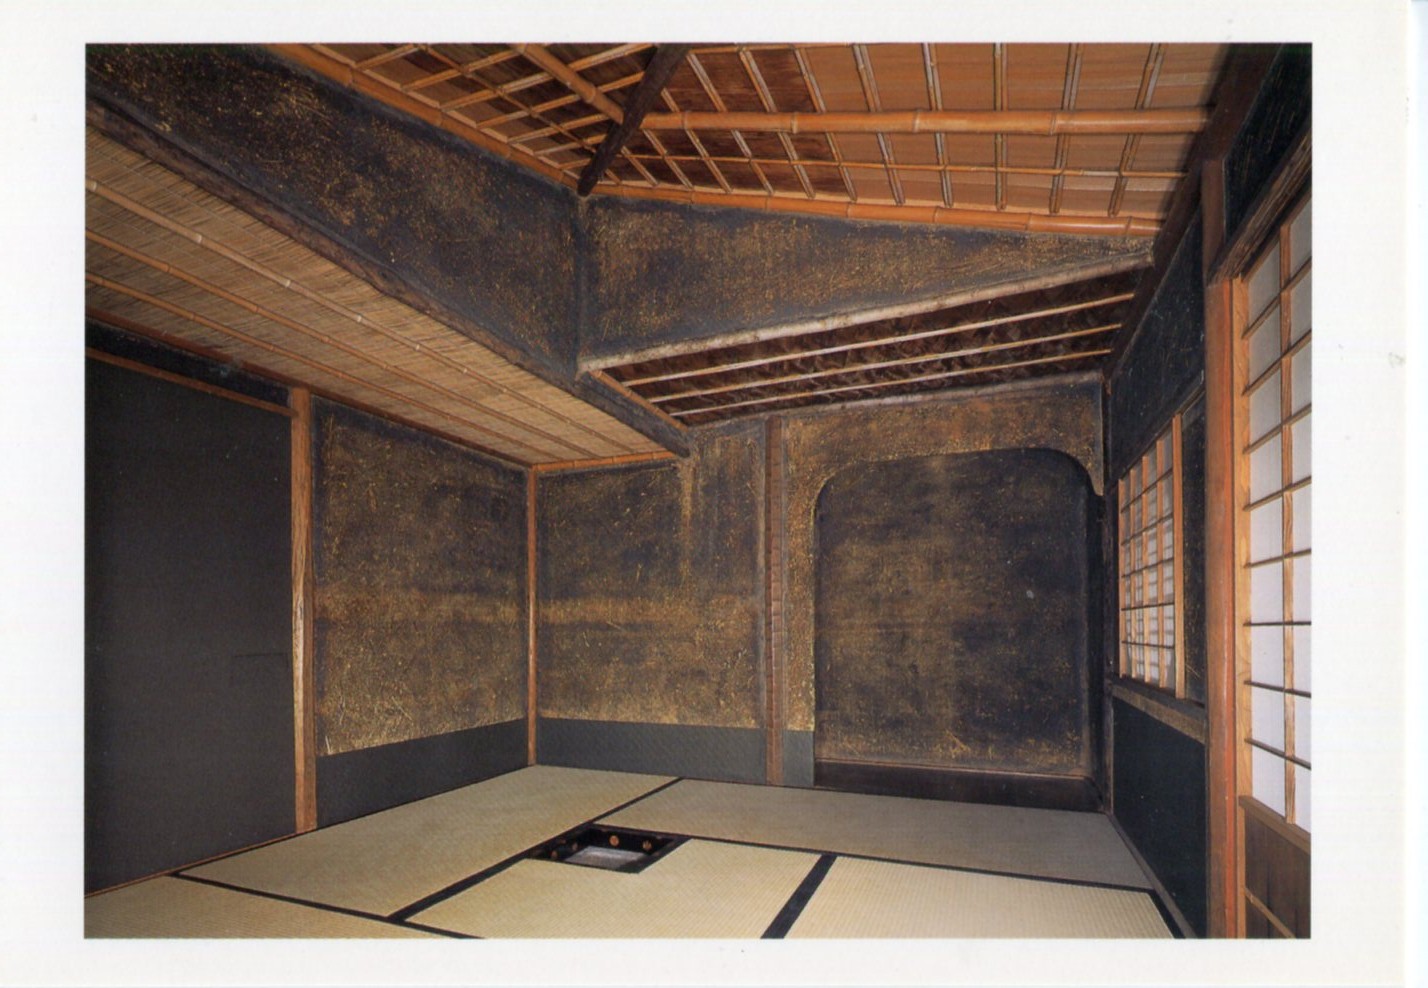 亭(绿荫繁茂处可见得其茅茸屋顶,是江户末期光格天皇所建的草庵式茶室